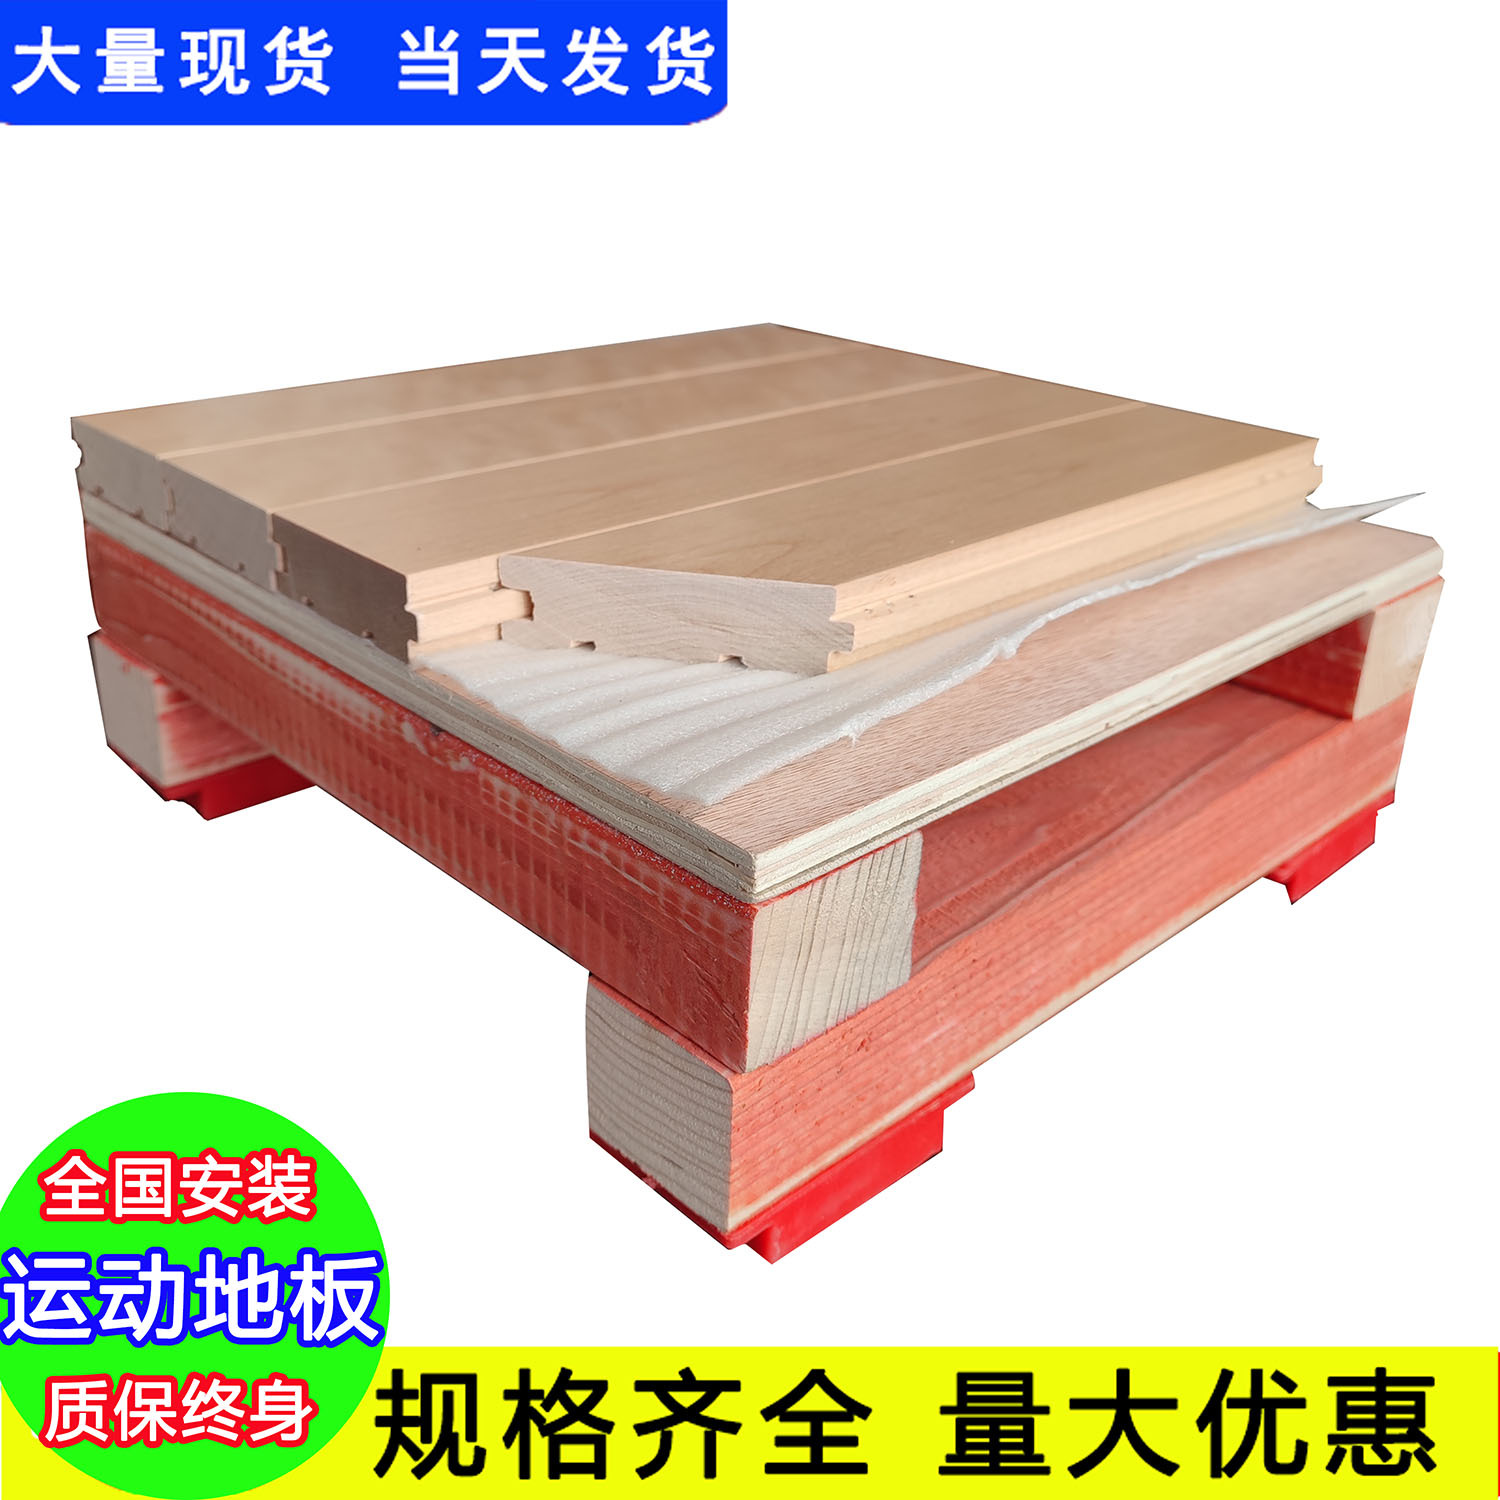 滁州地板厂家大全_运动枫木地板_滁州运动木地板